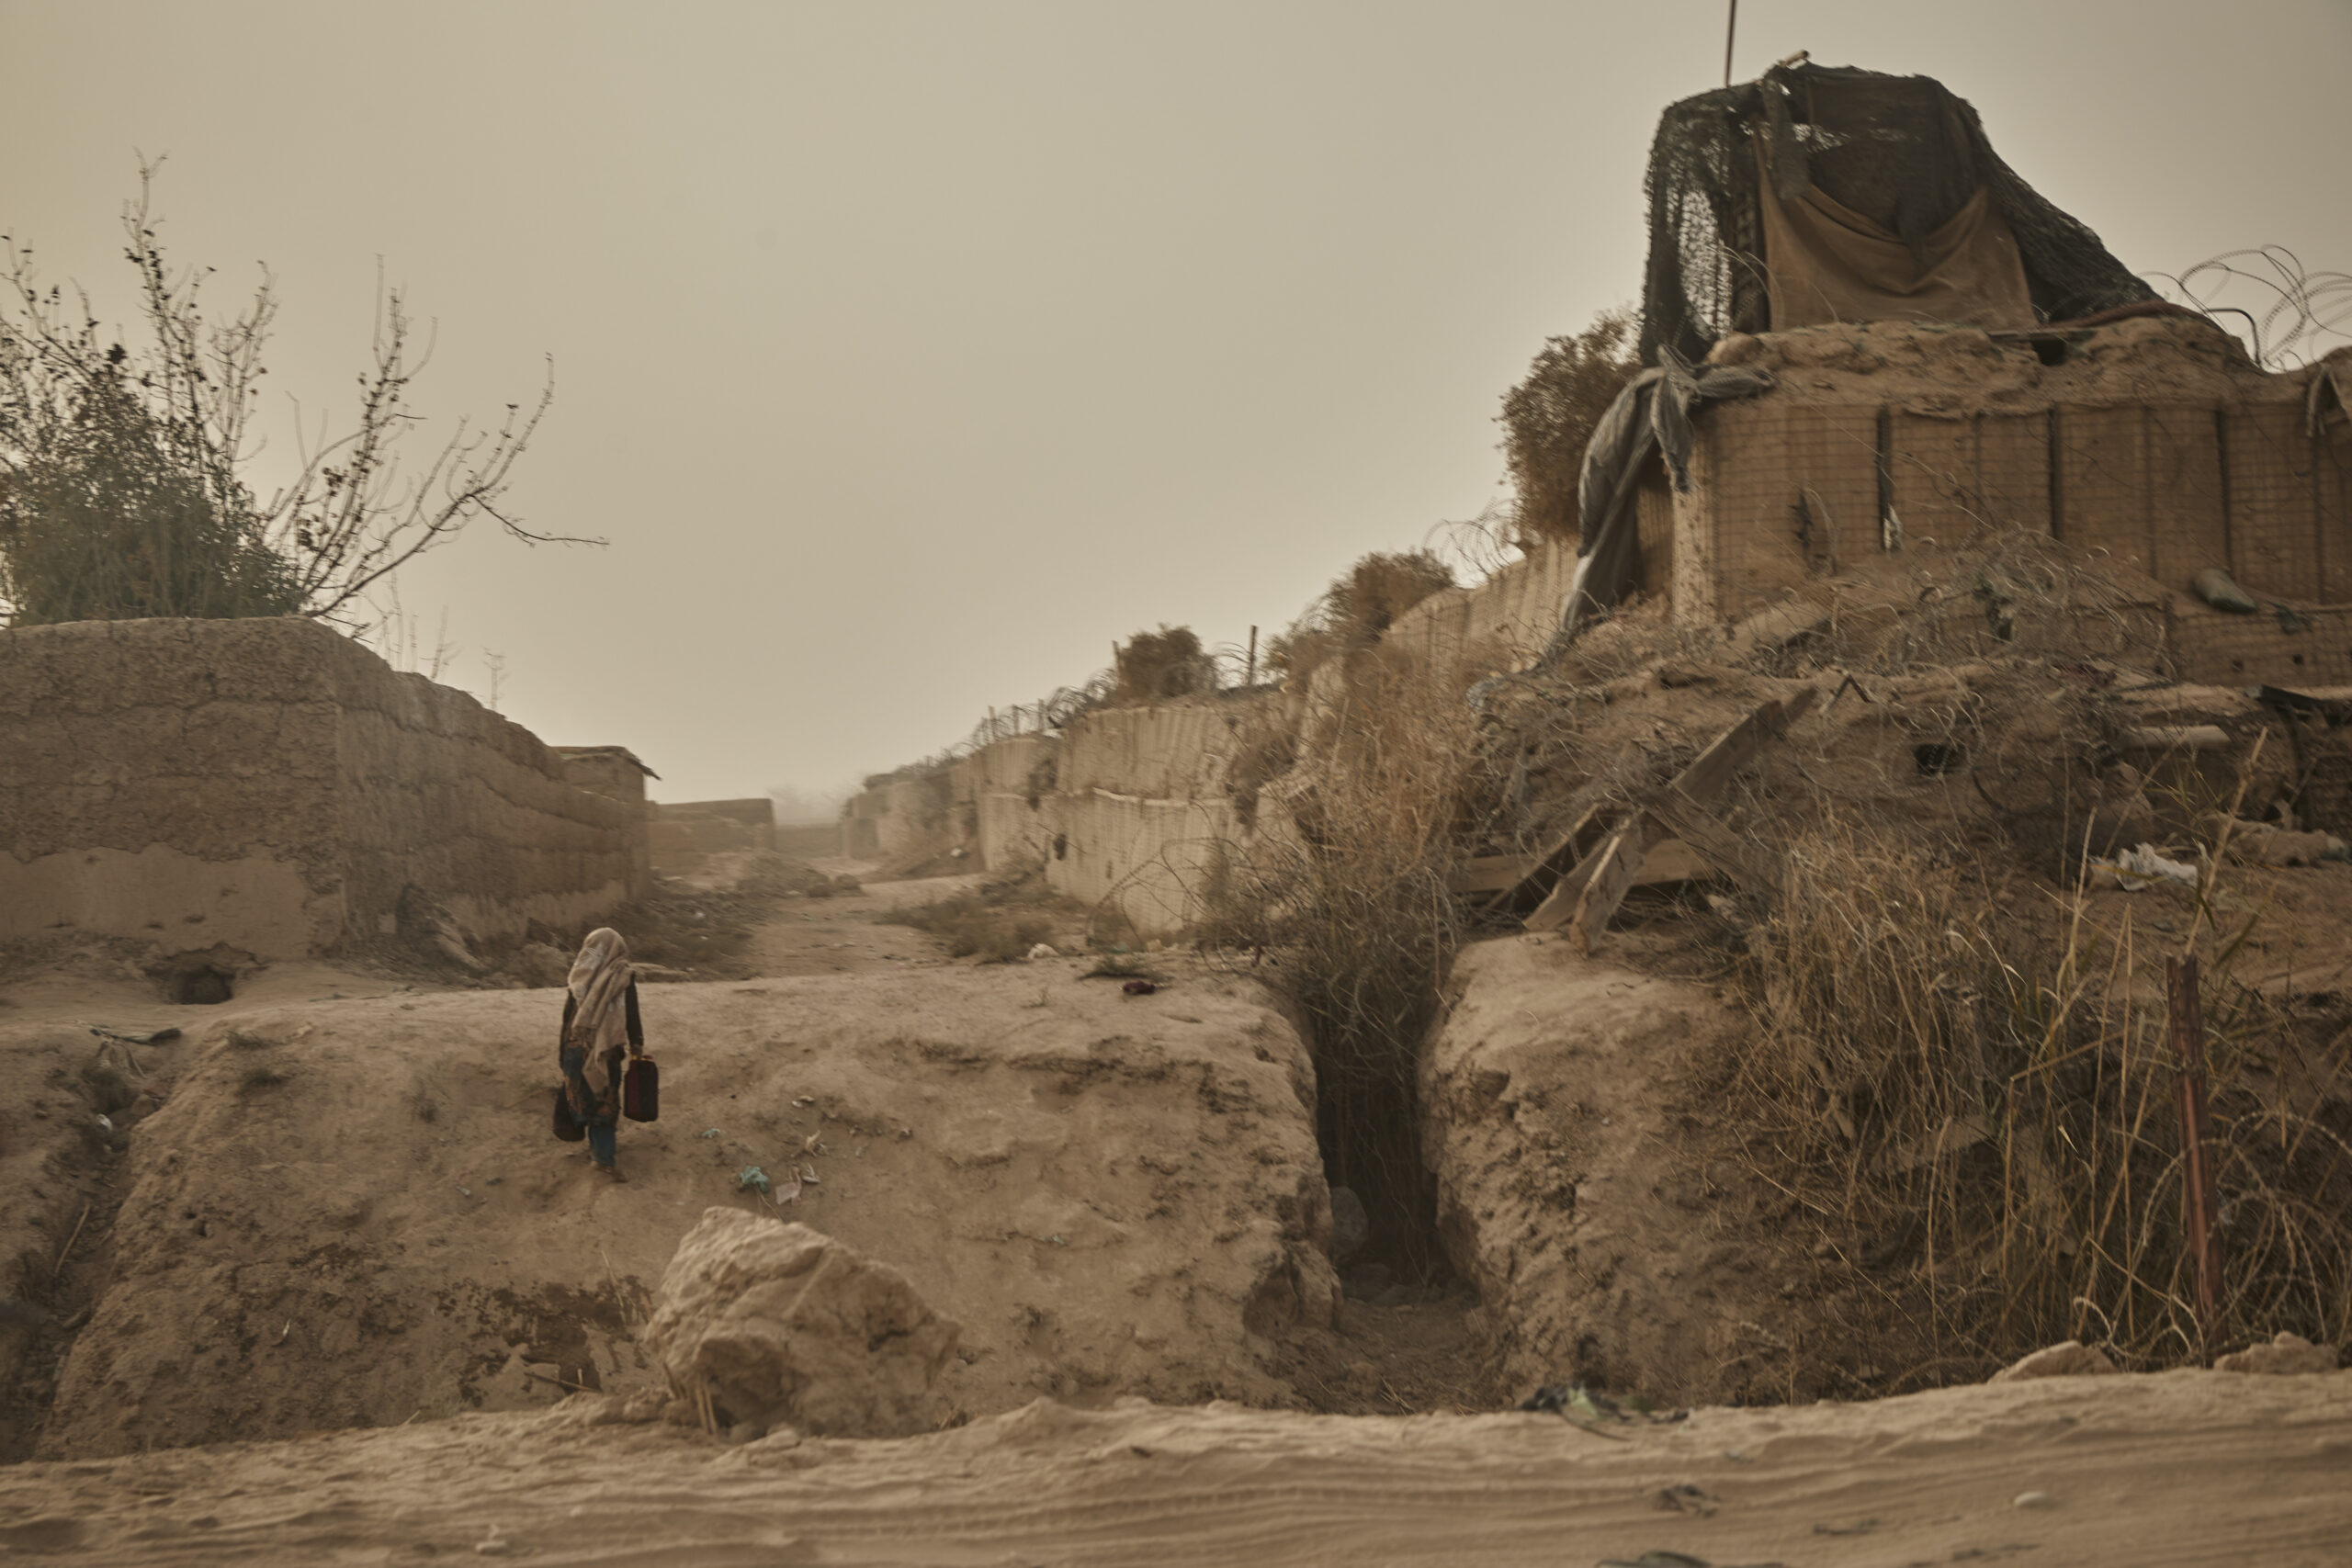 Het dorre landschap van de provincie Helmand, waar de effecten van een ernstige droogte overal zichtbaar zijn. © UNHCR/Andrew McConnell